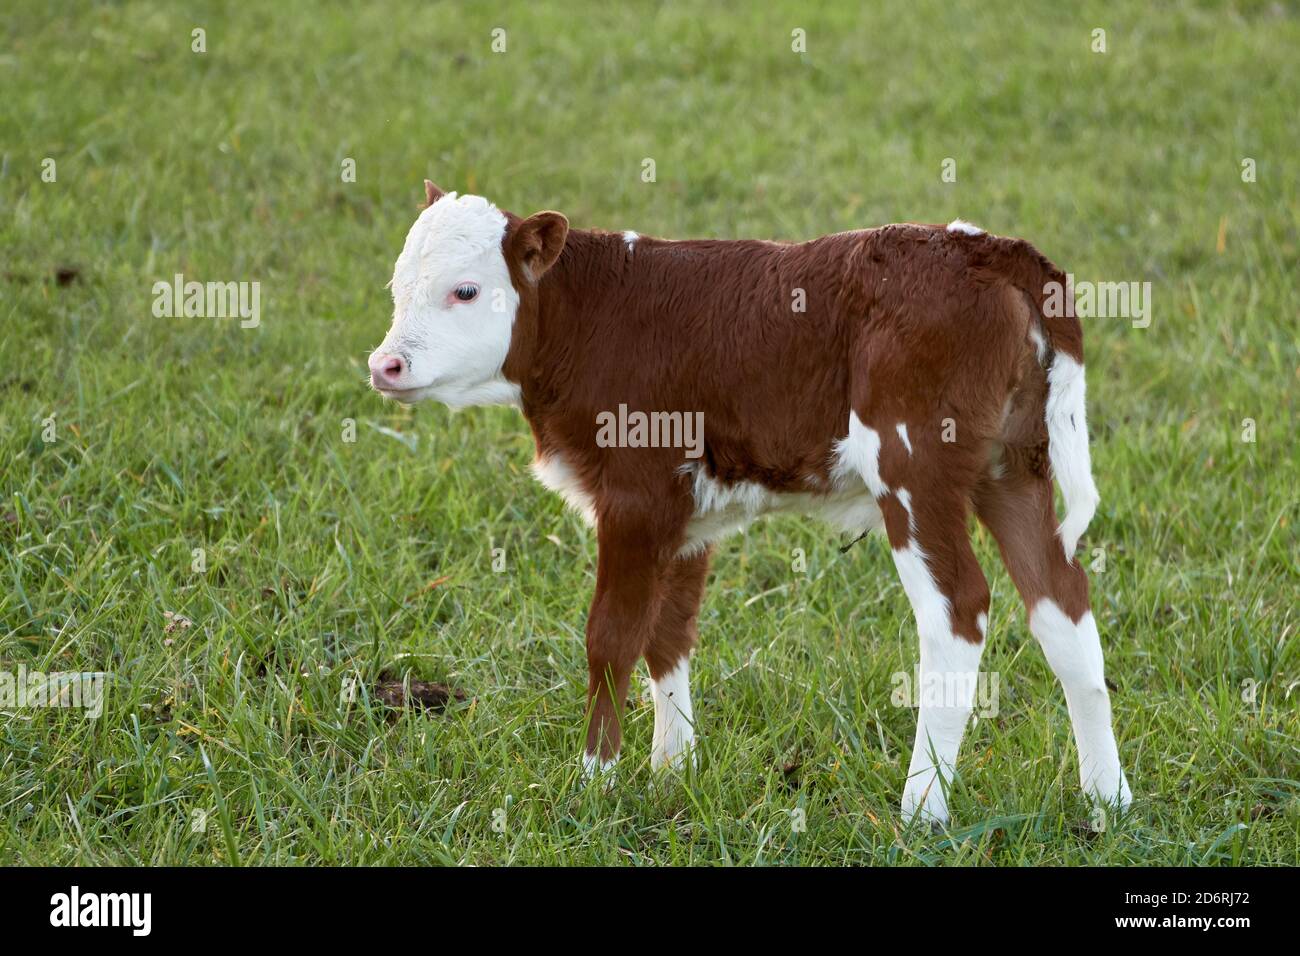 Carino vitello di vacca in pascolo verde. Bestiame Hereford Foto Stock